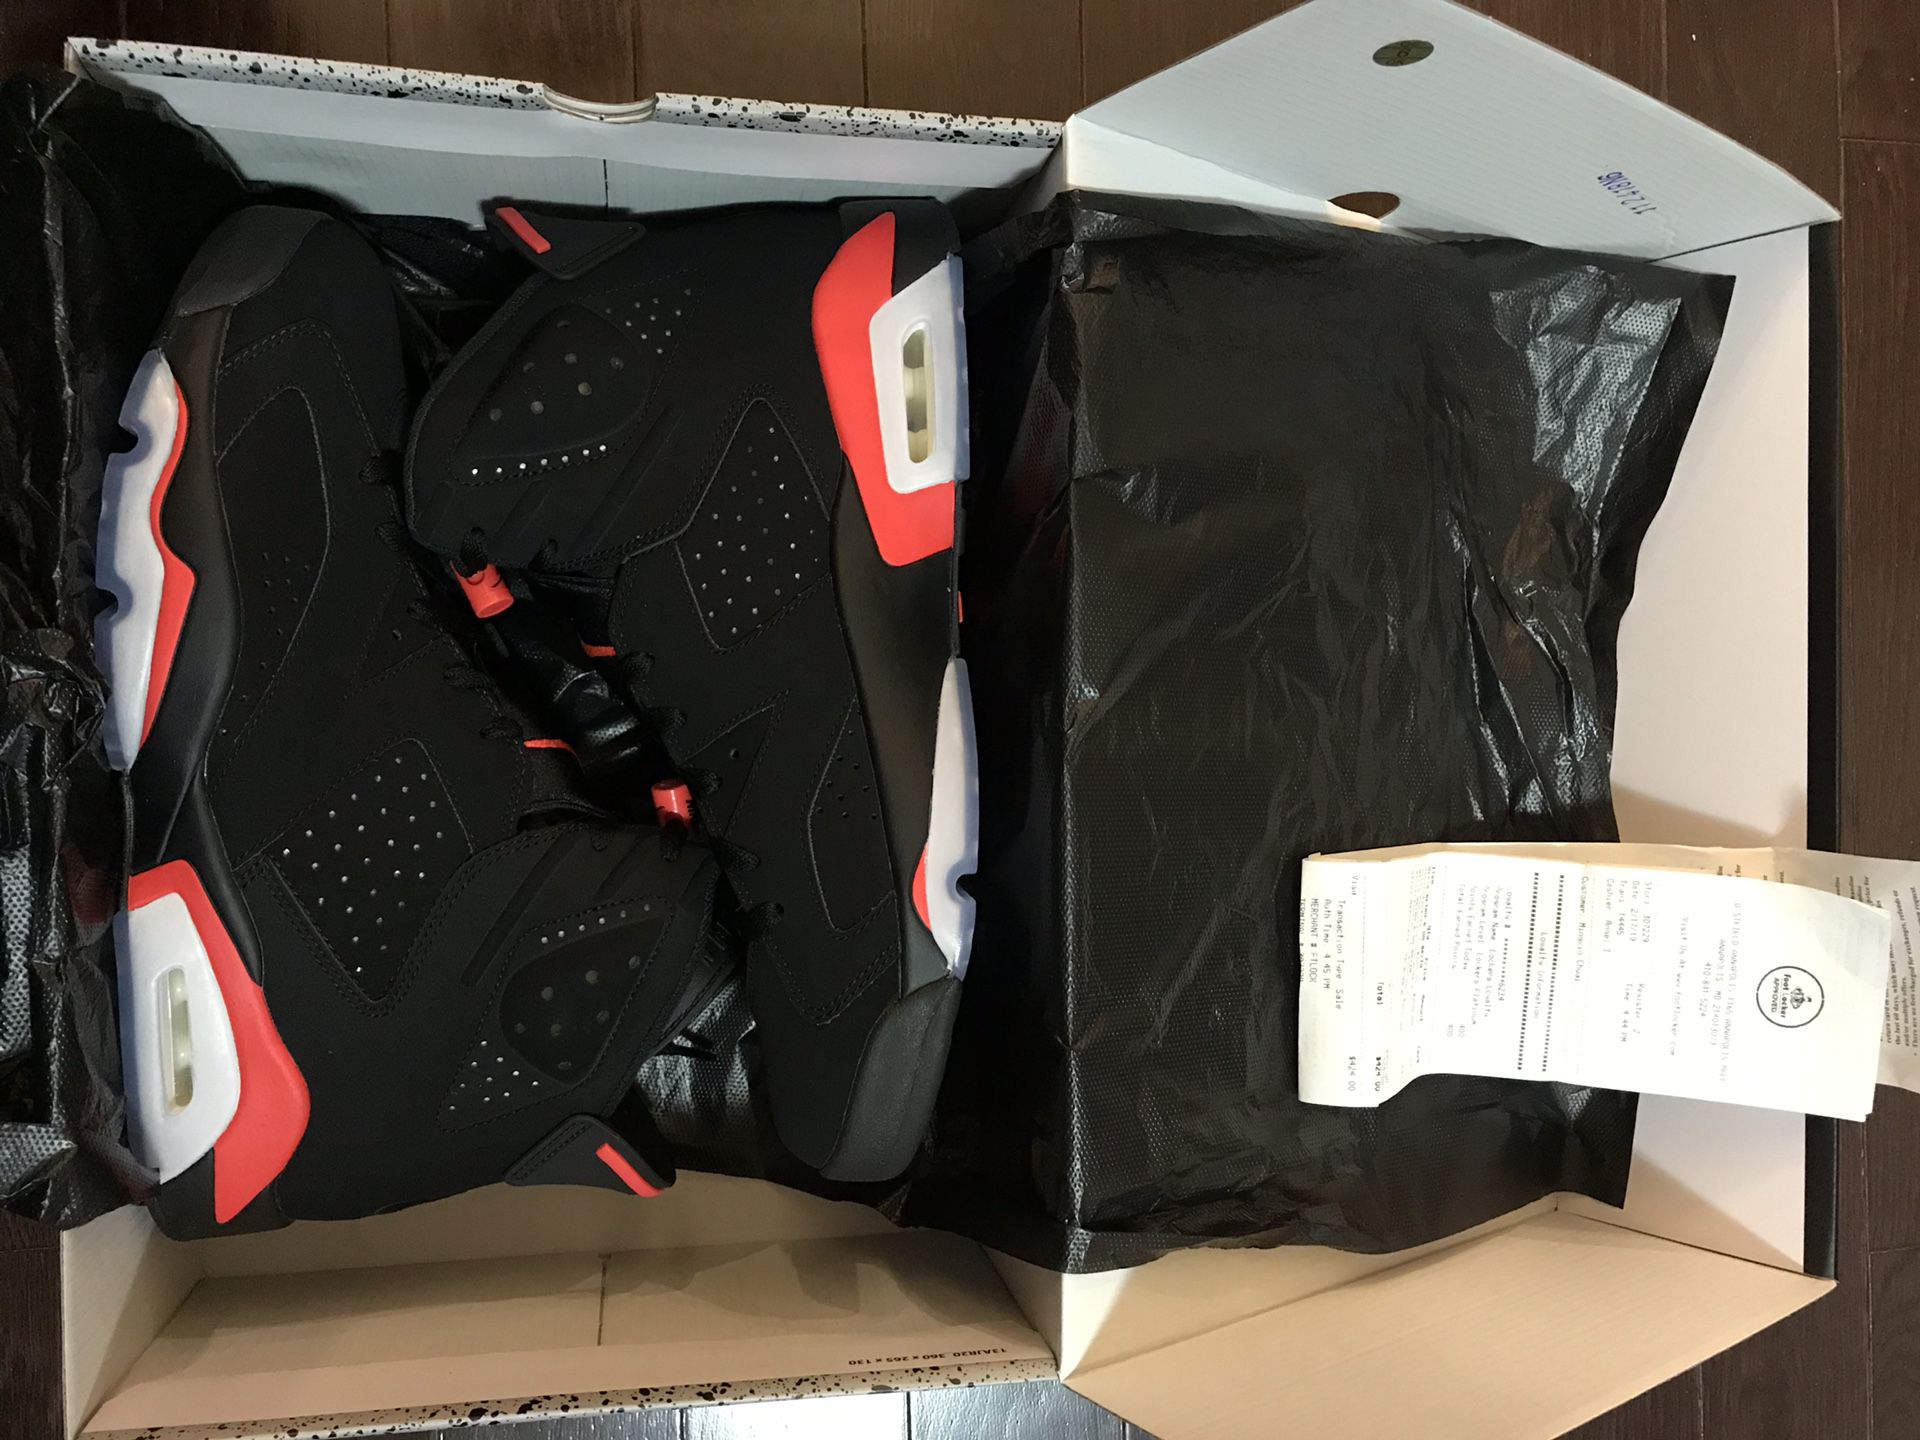 Air Jordan 6, size 11. New